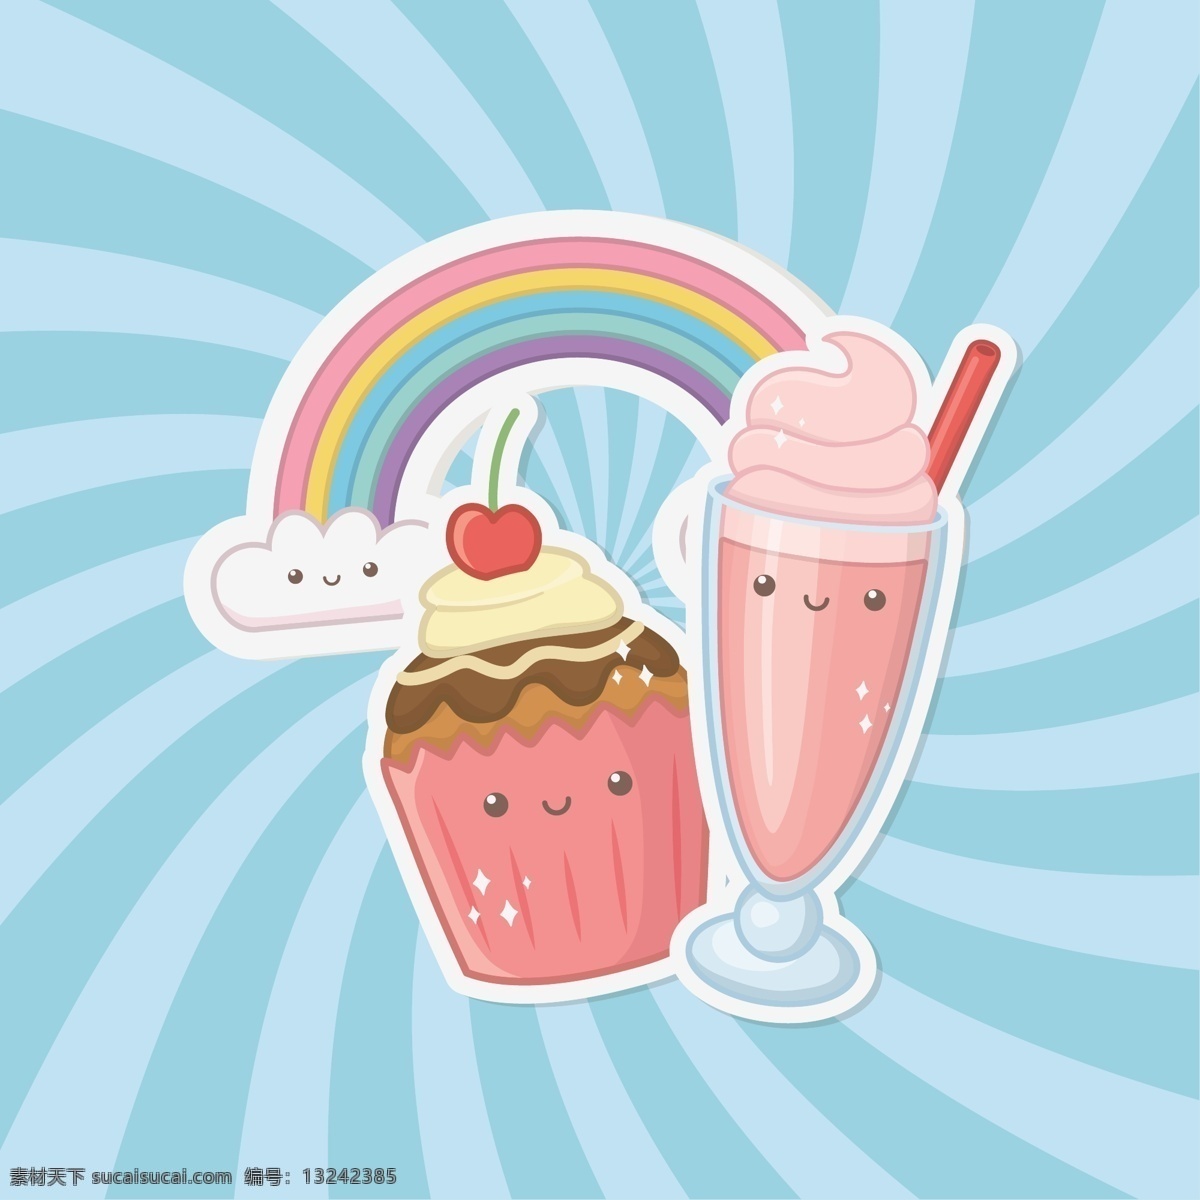 小 清新 点心 卡通 图案 小清新 彩色 创意 夏日装饰 下午茶 蛋糕 冰淇淋 装饰图案 冰棒 巧克力 面包 甜甜圈 矢量插画